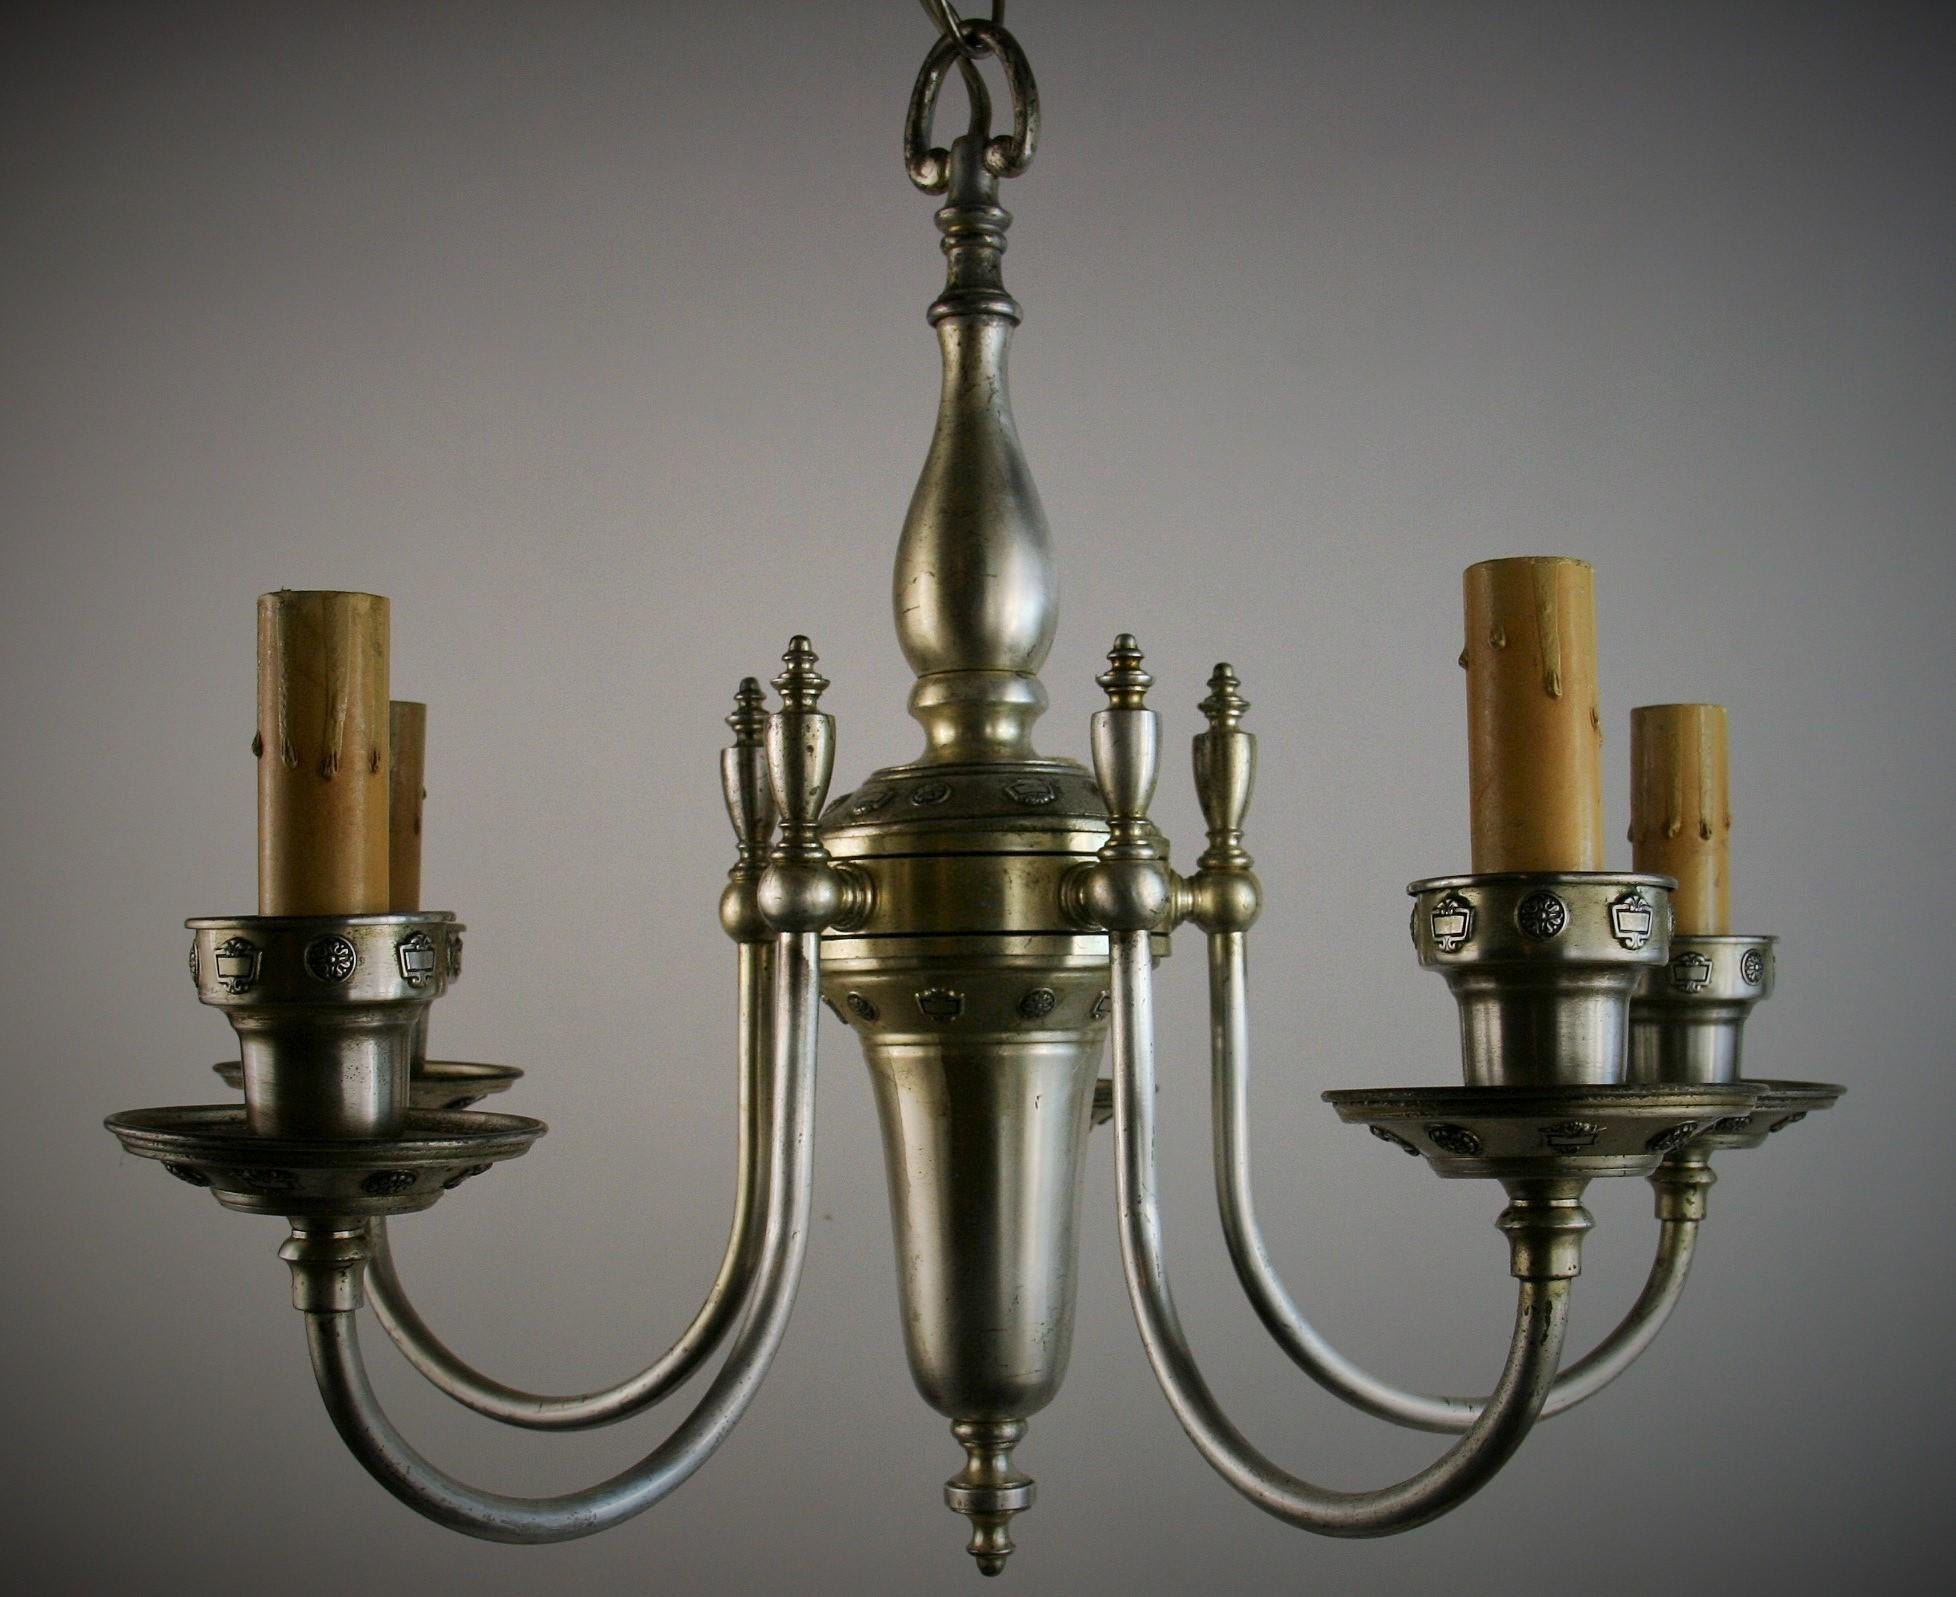 1594  Englischer versilberter 5-Licht-Kronleuchter aus Messing um 1920
Neu verkabelt 
Kandelaber-Glühbirnen mit einer maximalen Leistung von 60 Watt